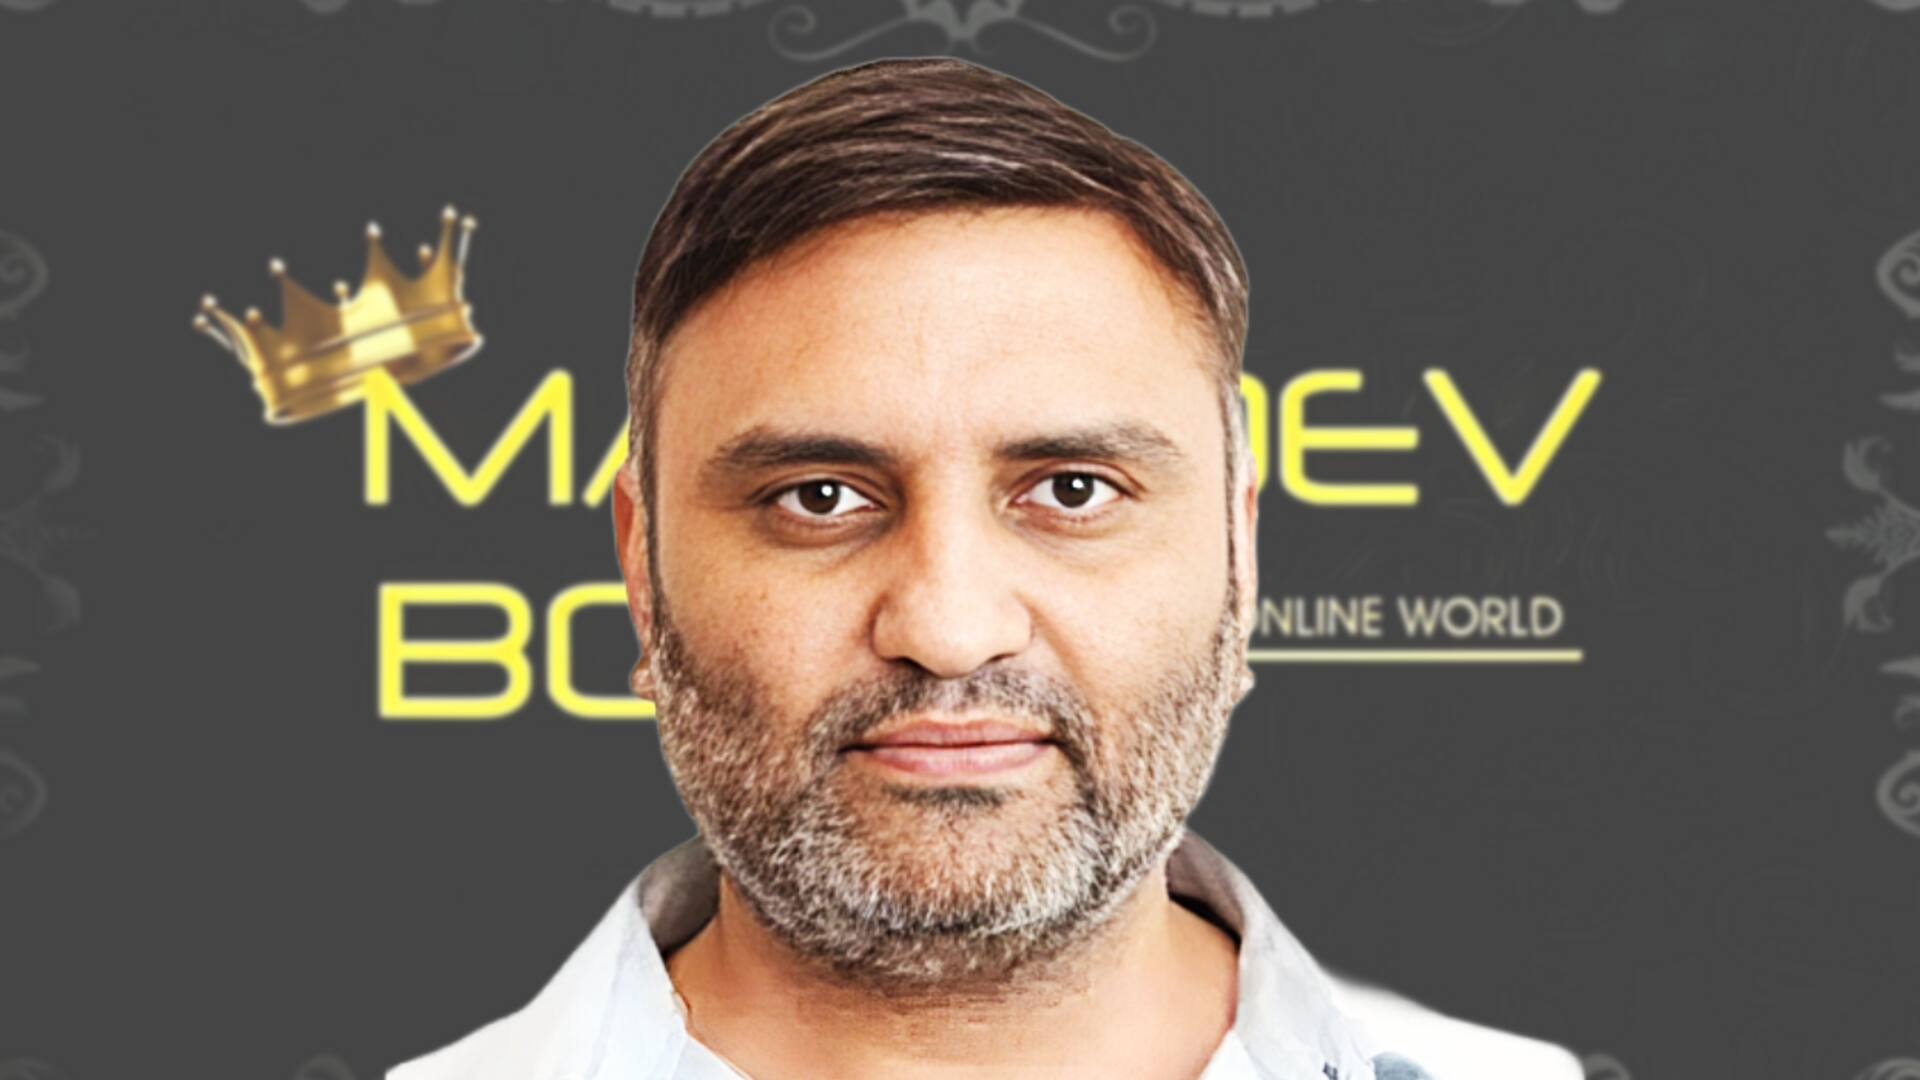 महादेव ऐप का मालिक रवि उप्पल दुबई से गिरफ्तार, जल्द लाया जाएगा भारत